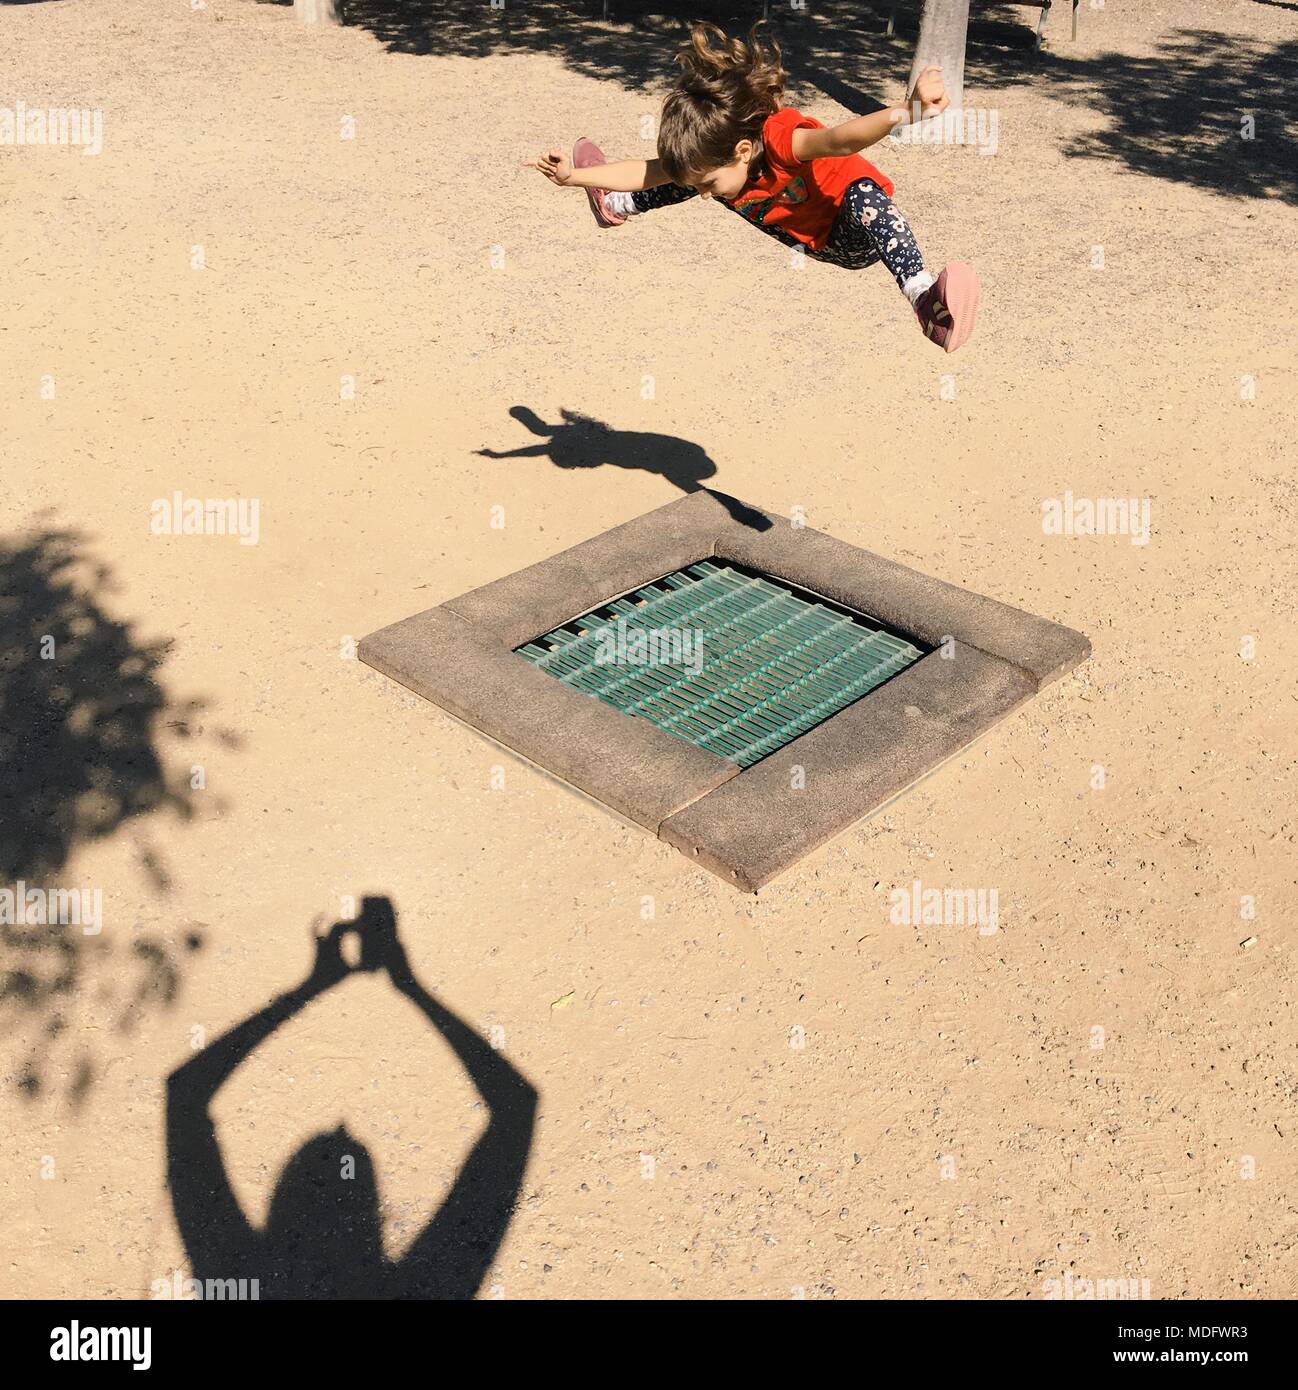 Mère de photographier sa fille sautant par dessus une grille métallique Banque D'Images